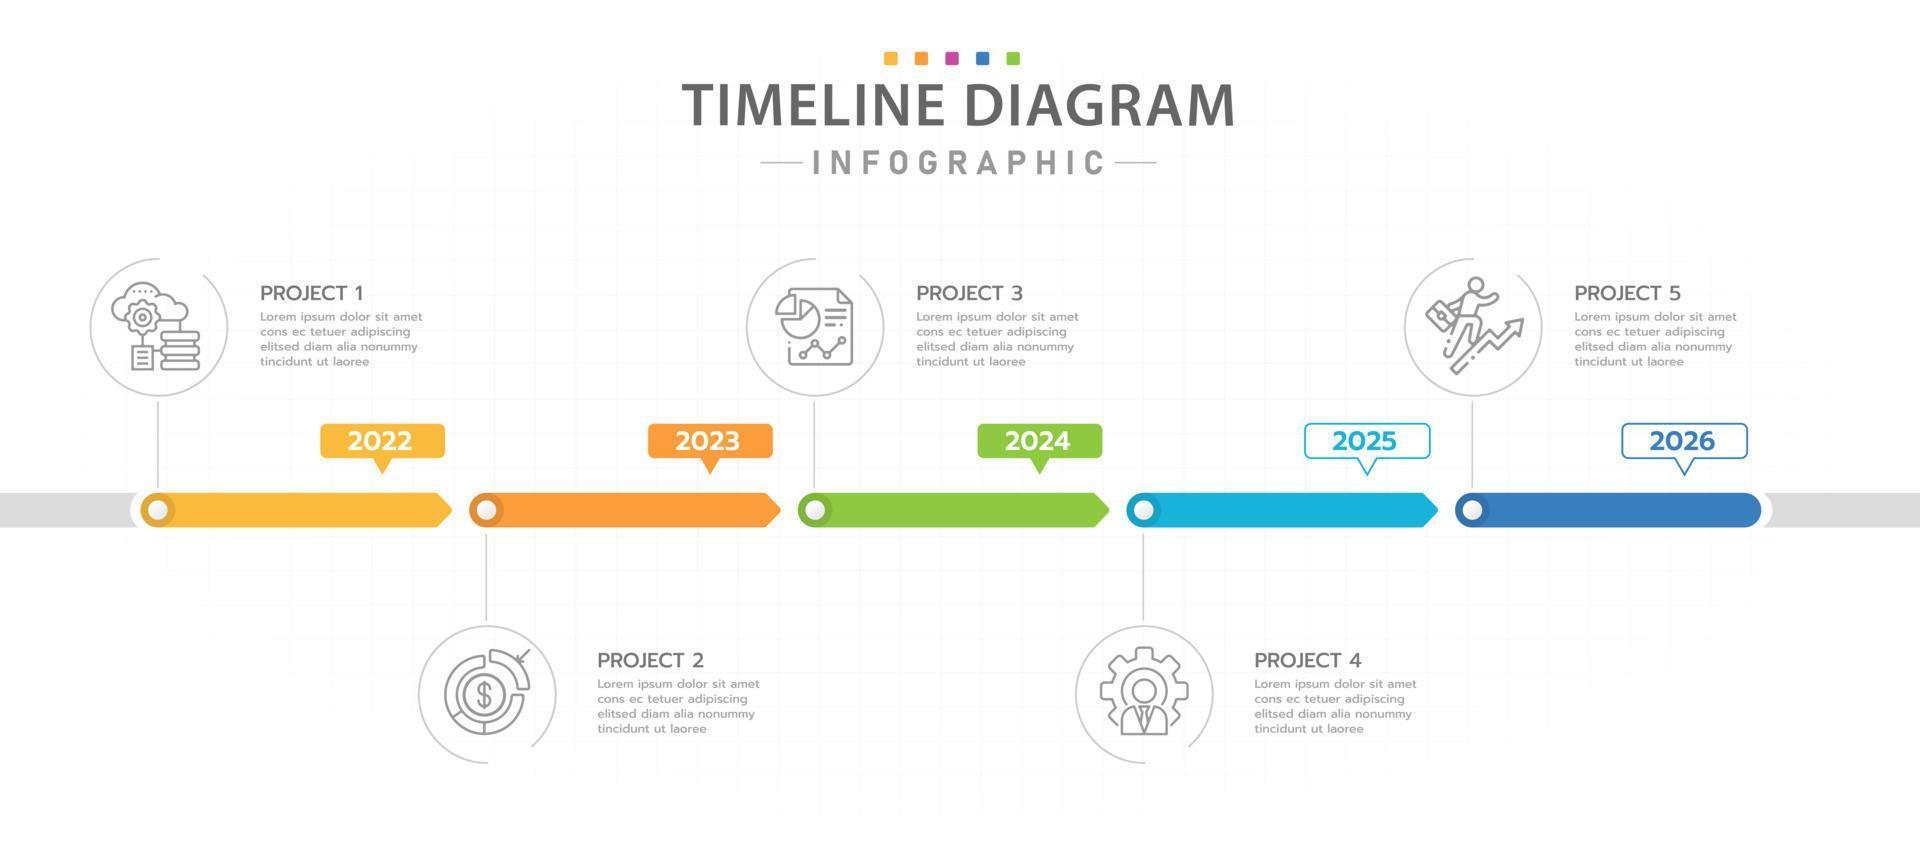 modèle d'infographie pour les entreprises. Diagramme de chronologie moderne en 5 étapes avec calendrier annuel, infographie vectorielle de présentation. vecteur